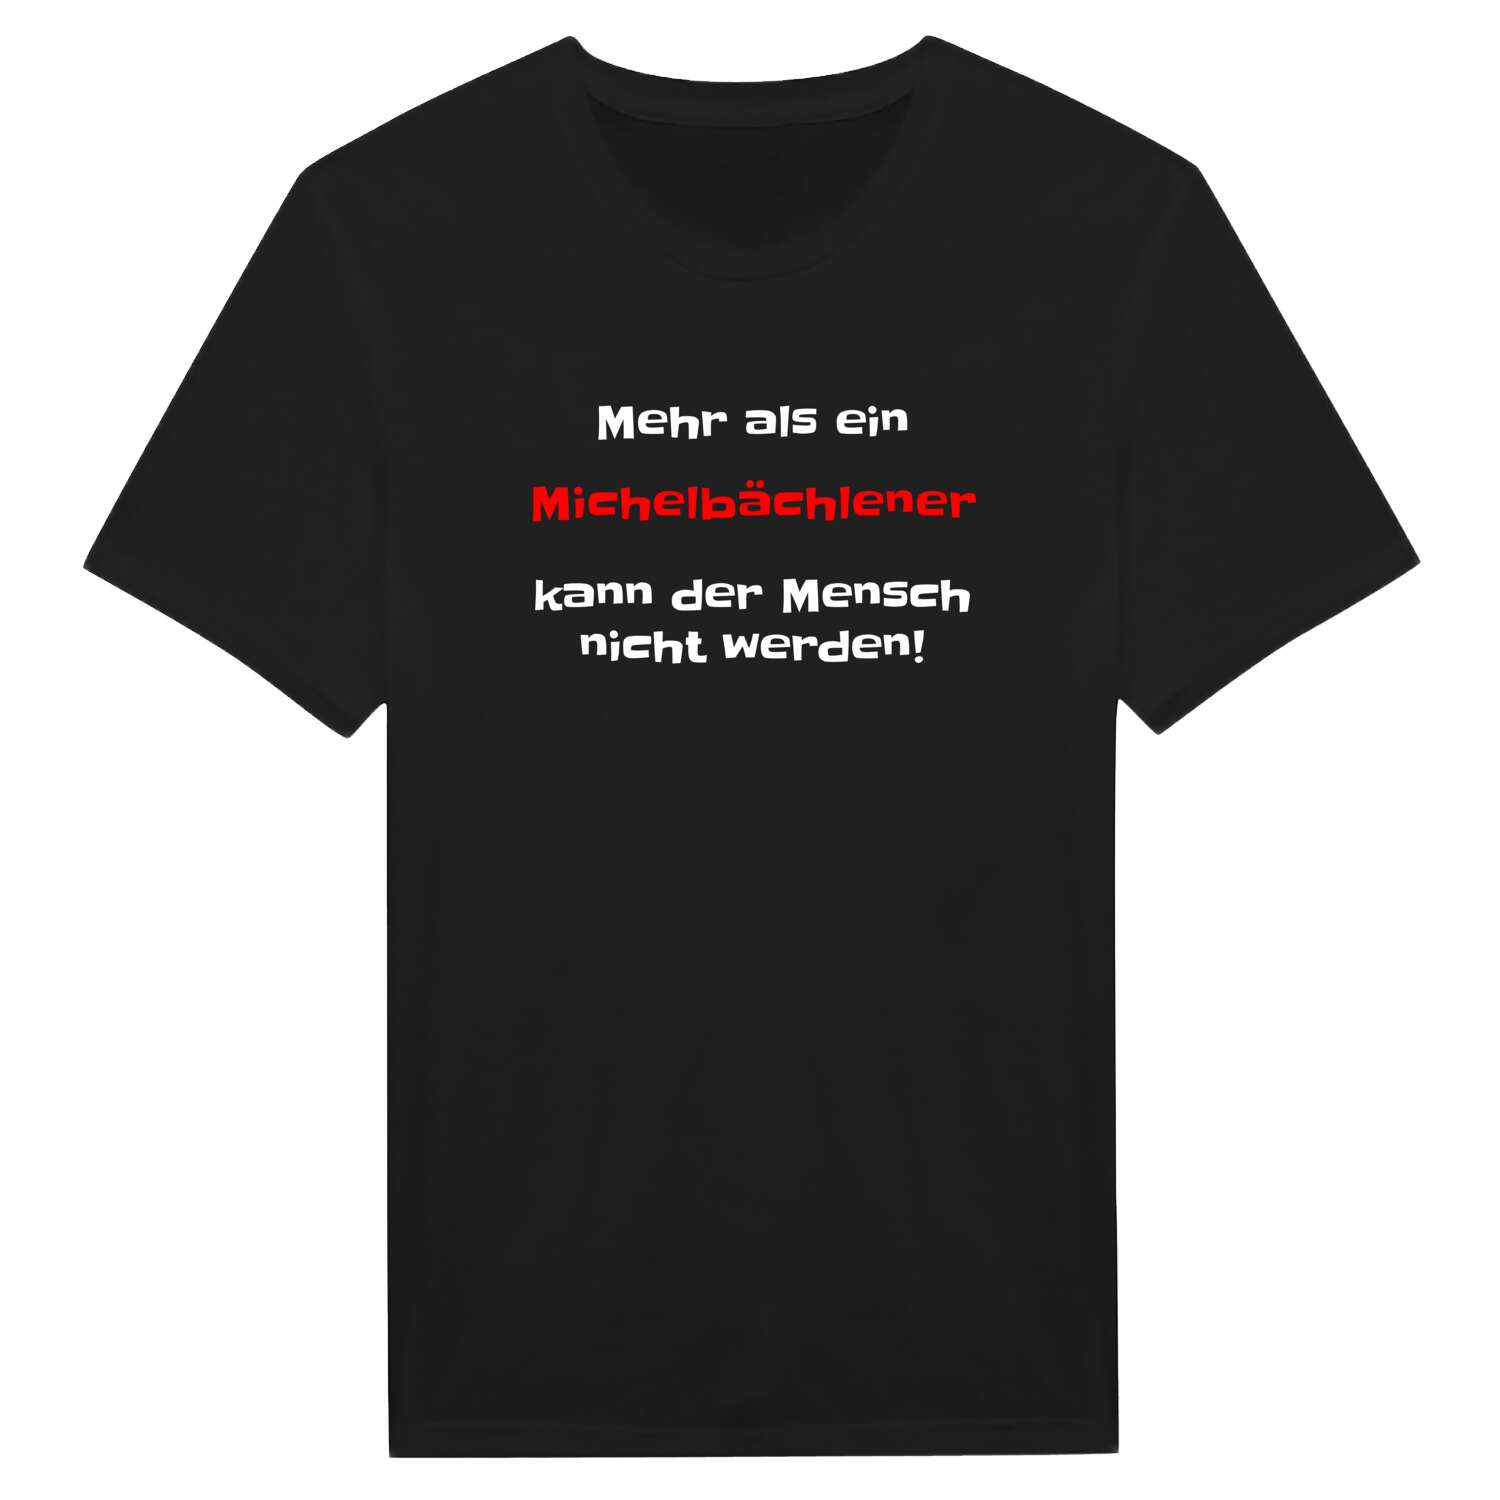 Michelbächle T-Shirt »Mehr als ein«